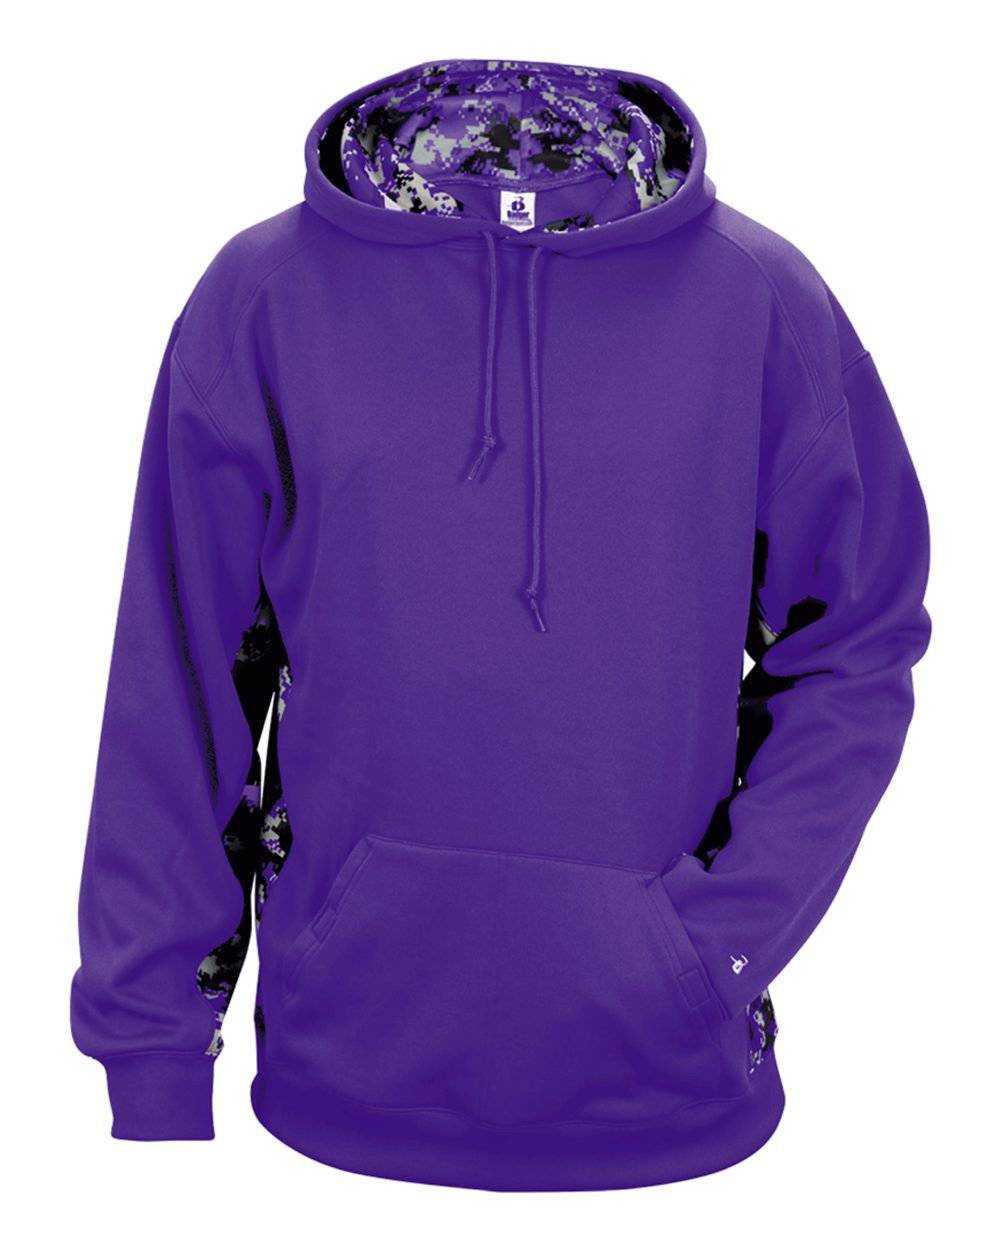 Badger Sport 1464 Adult Digital Hoodie - Purple Purple Digital - HIT a Double - 1